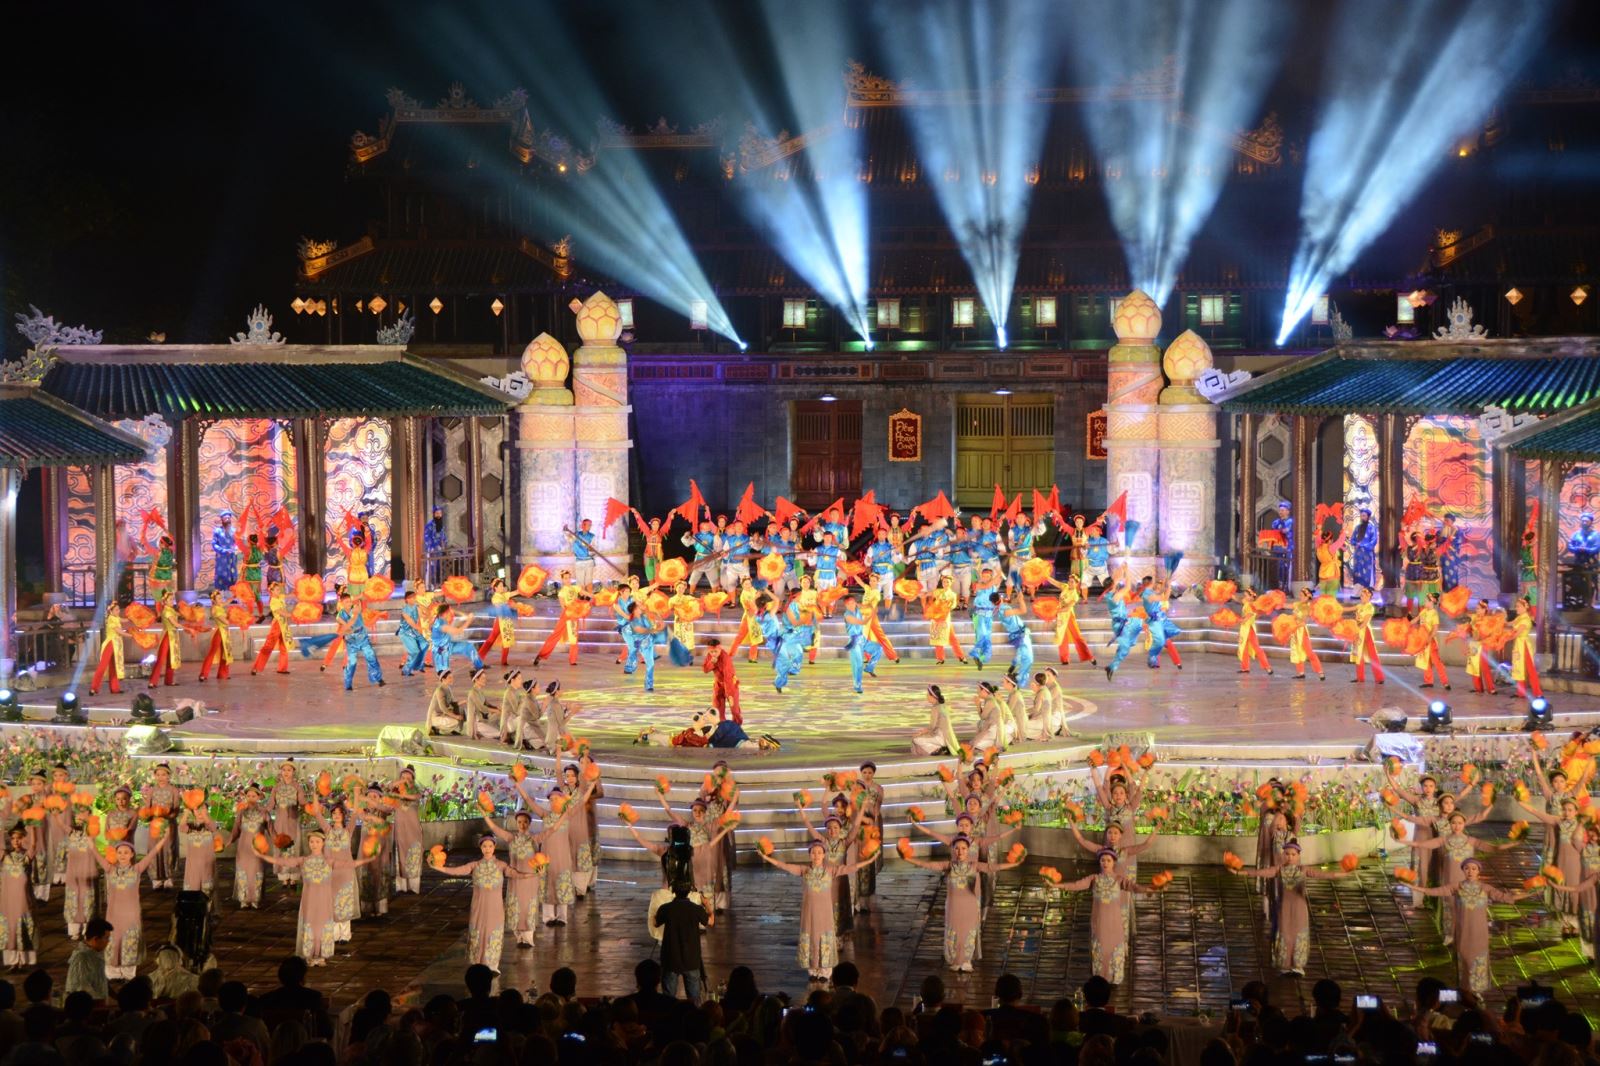 Trước đó, tỉnh Thừa Thiên Huế đã nhiều lần dời lịch tổ chức Festival Huế 2020 do dịch COVID-19. Thời gian gần nhất dự kiến tổ chức được xác định là vào ngày 26 - 31/8 (ảnh minh họa)